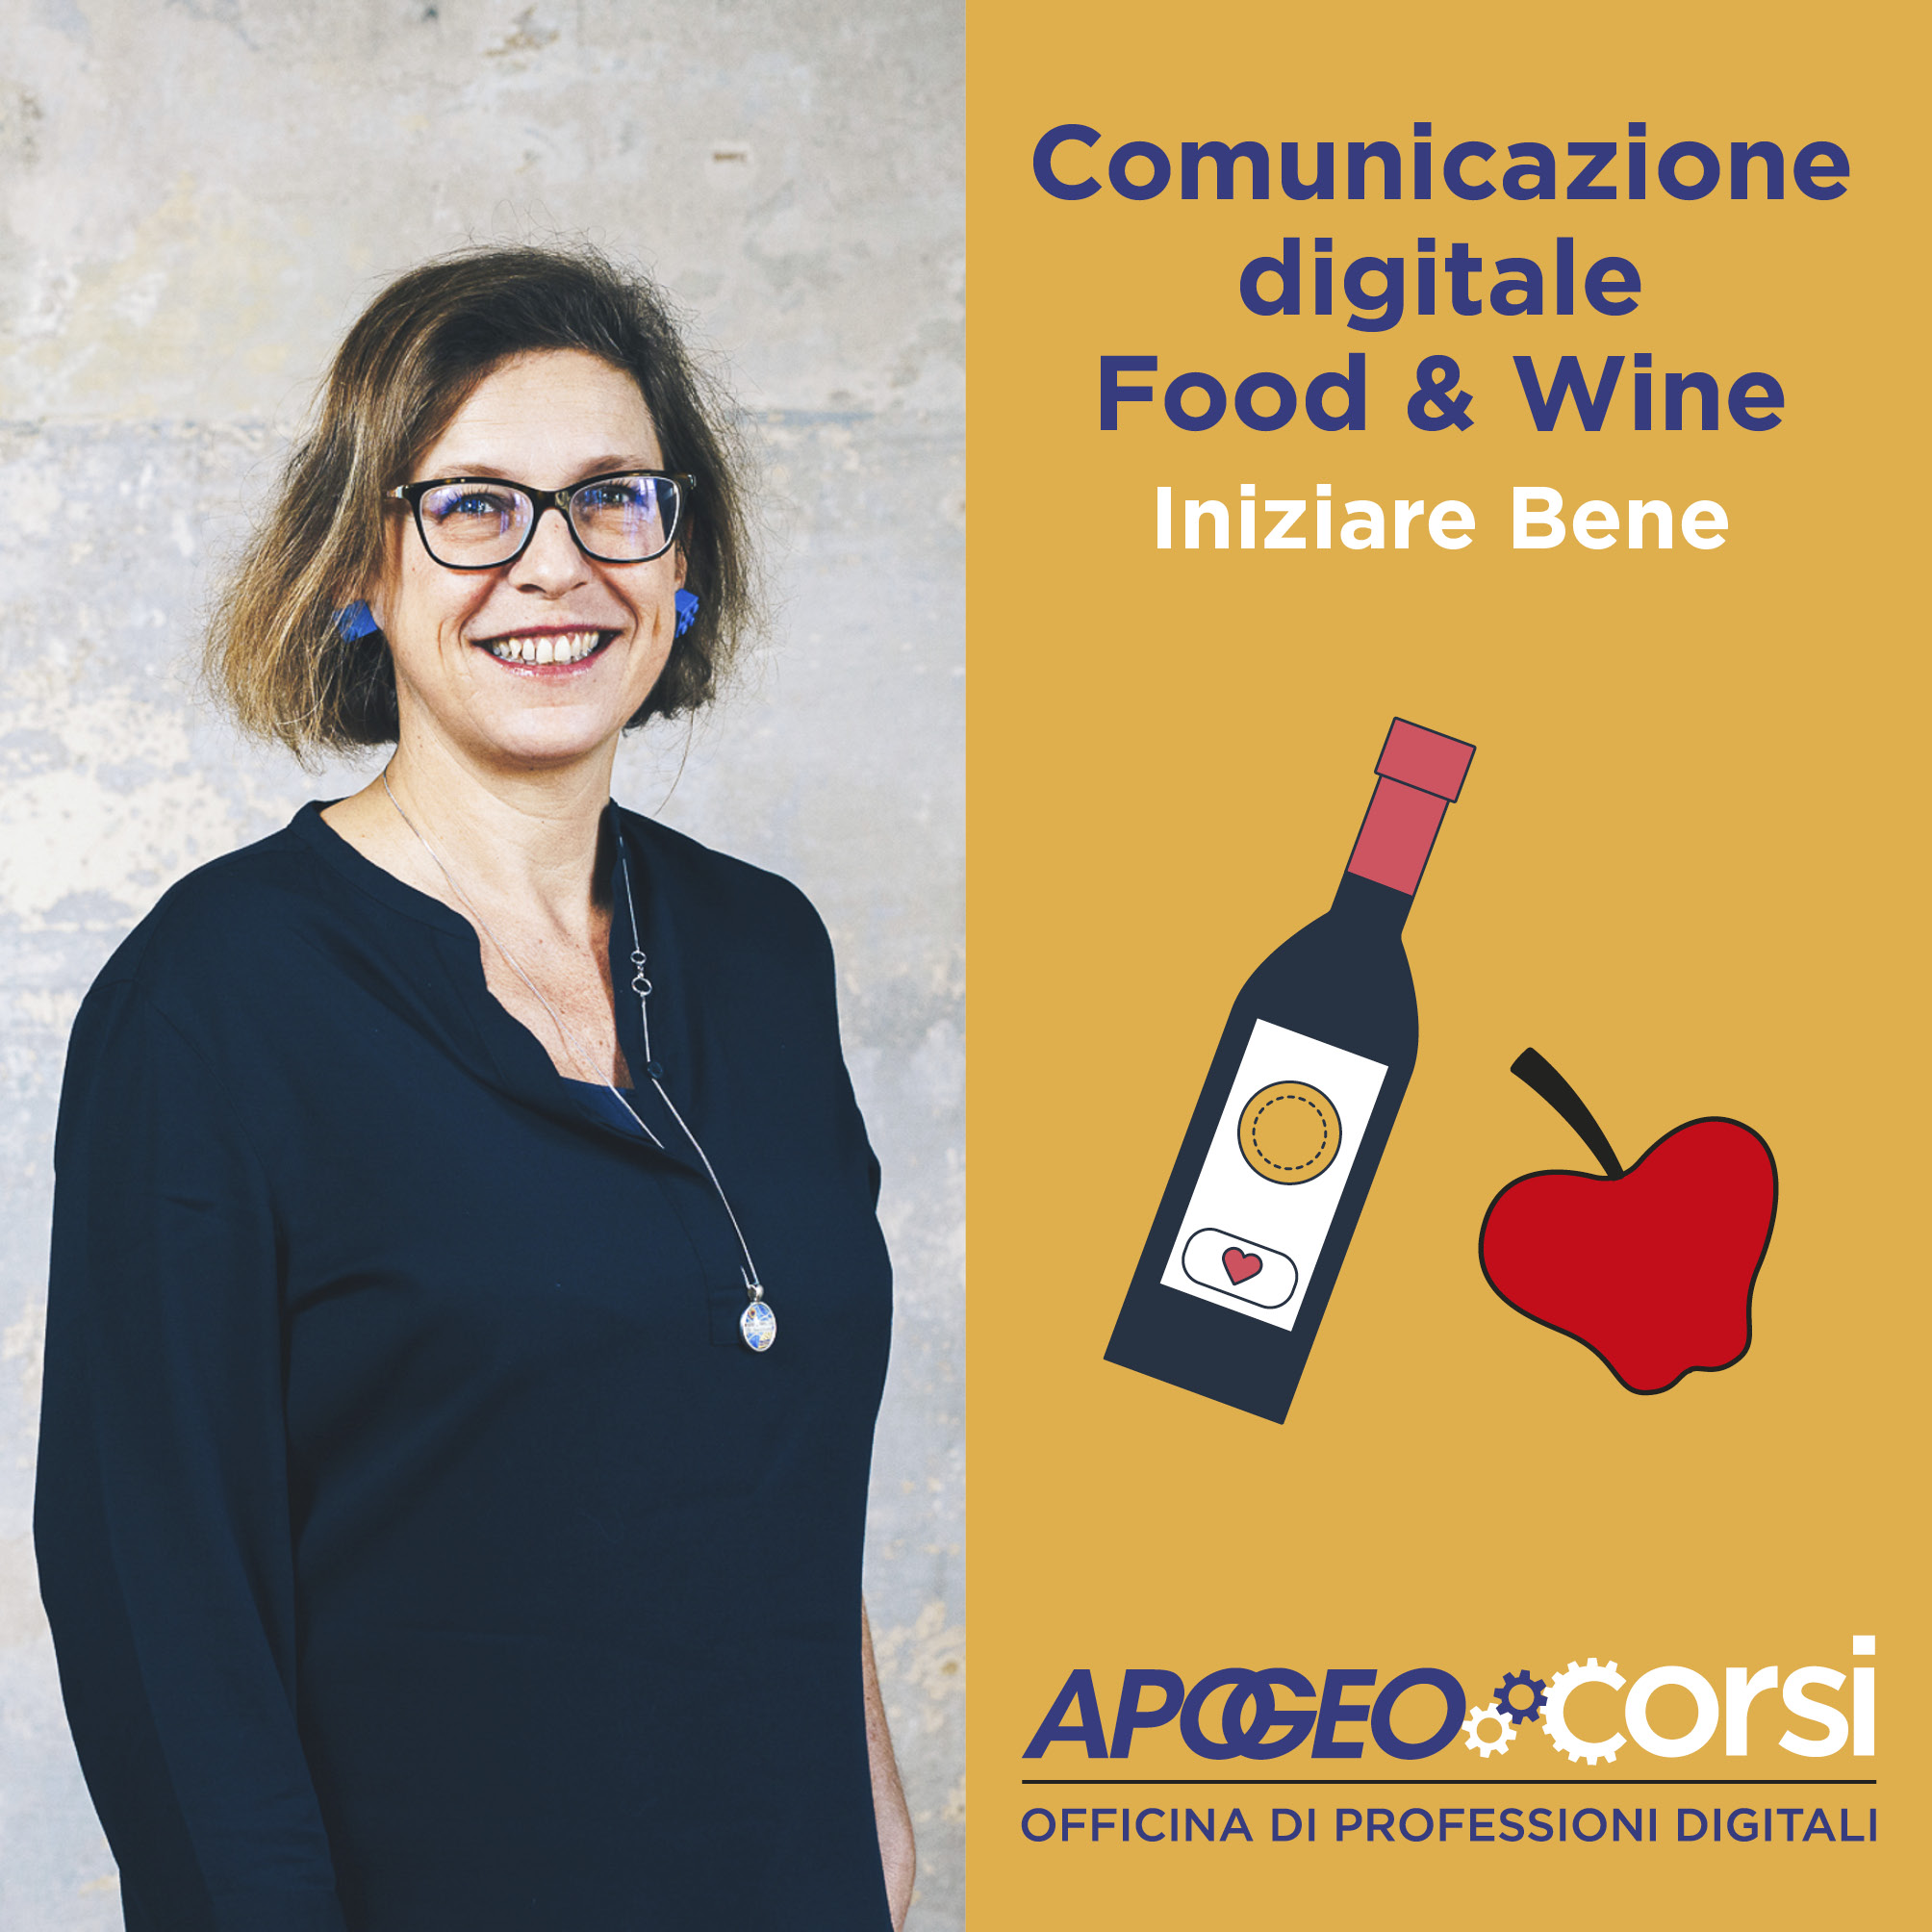 Comunicazione digitale Food & Wine, con Barbara Sgarzi